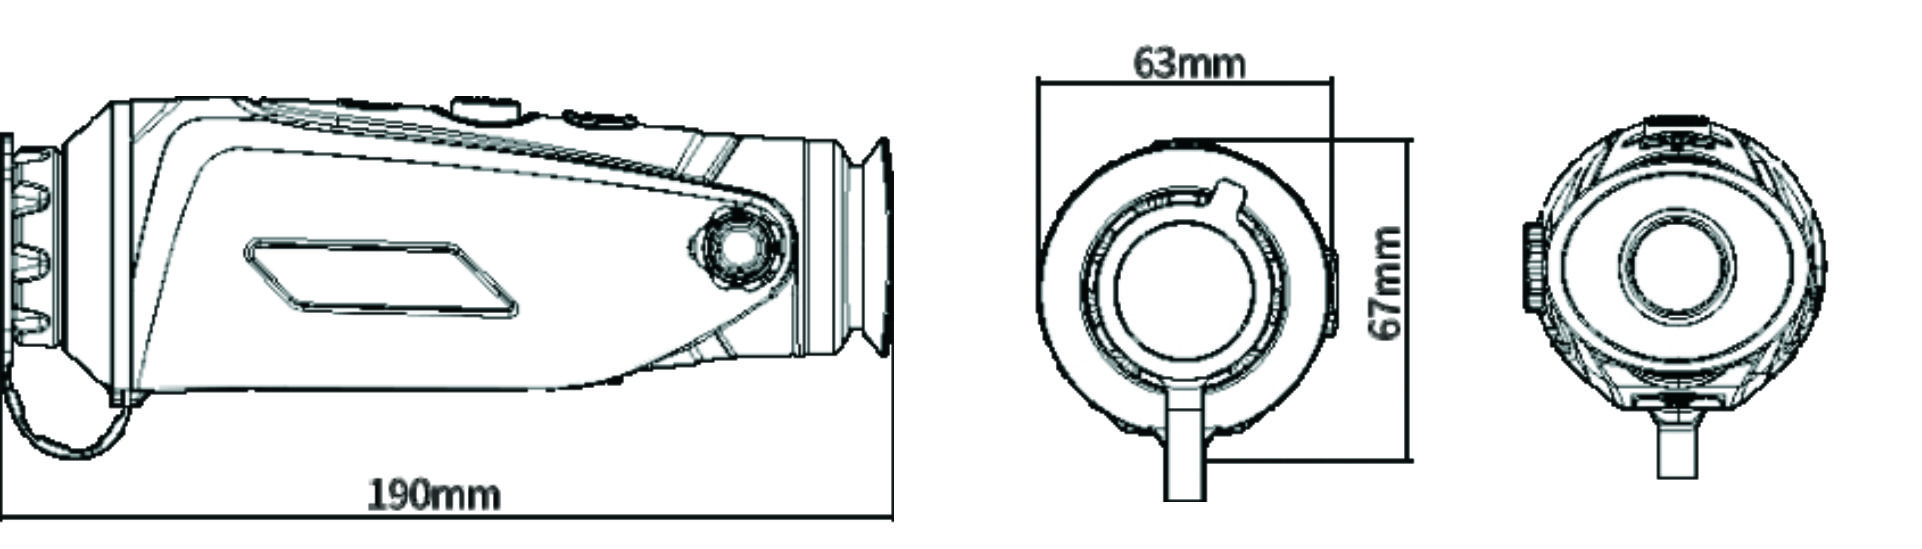 Габаритный чертеж тепловизионного прибора ночного видения CYCLOPS325